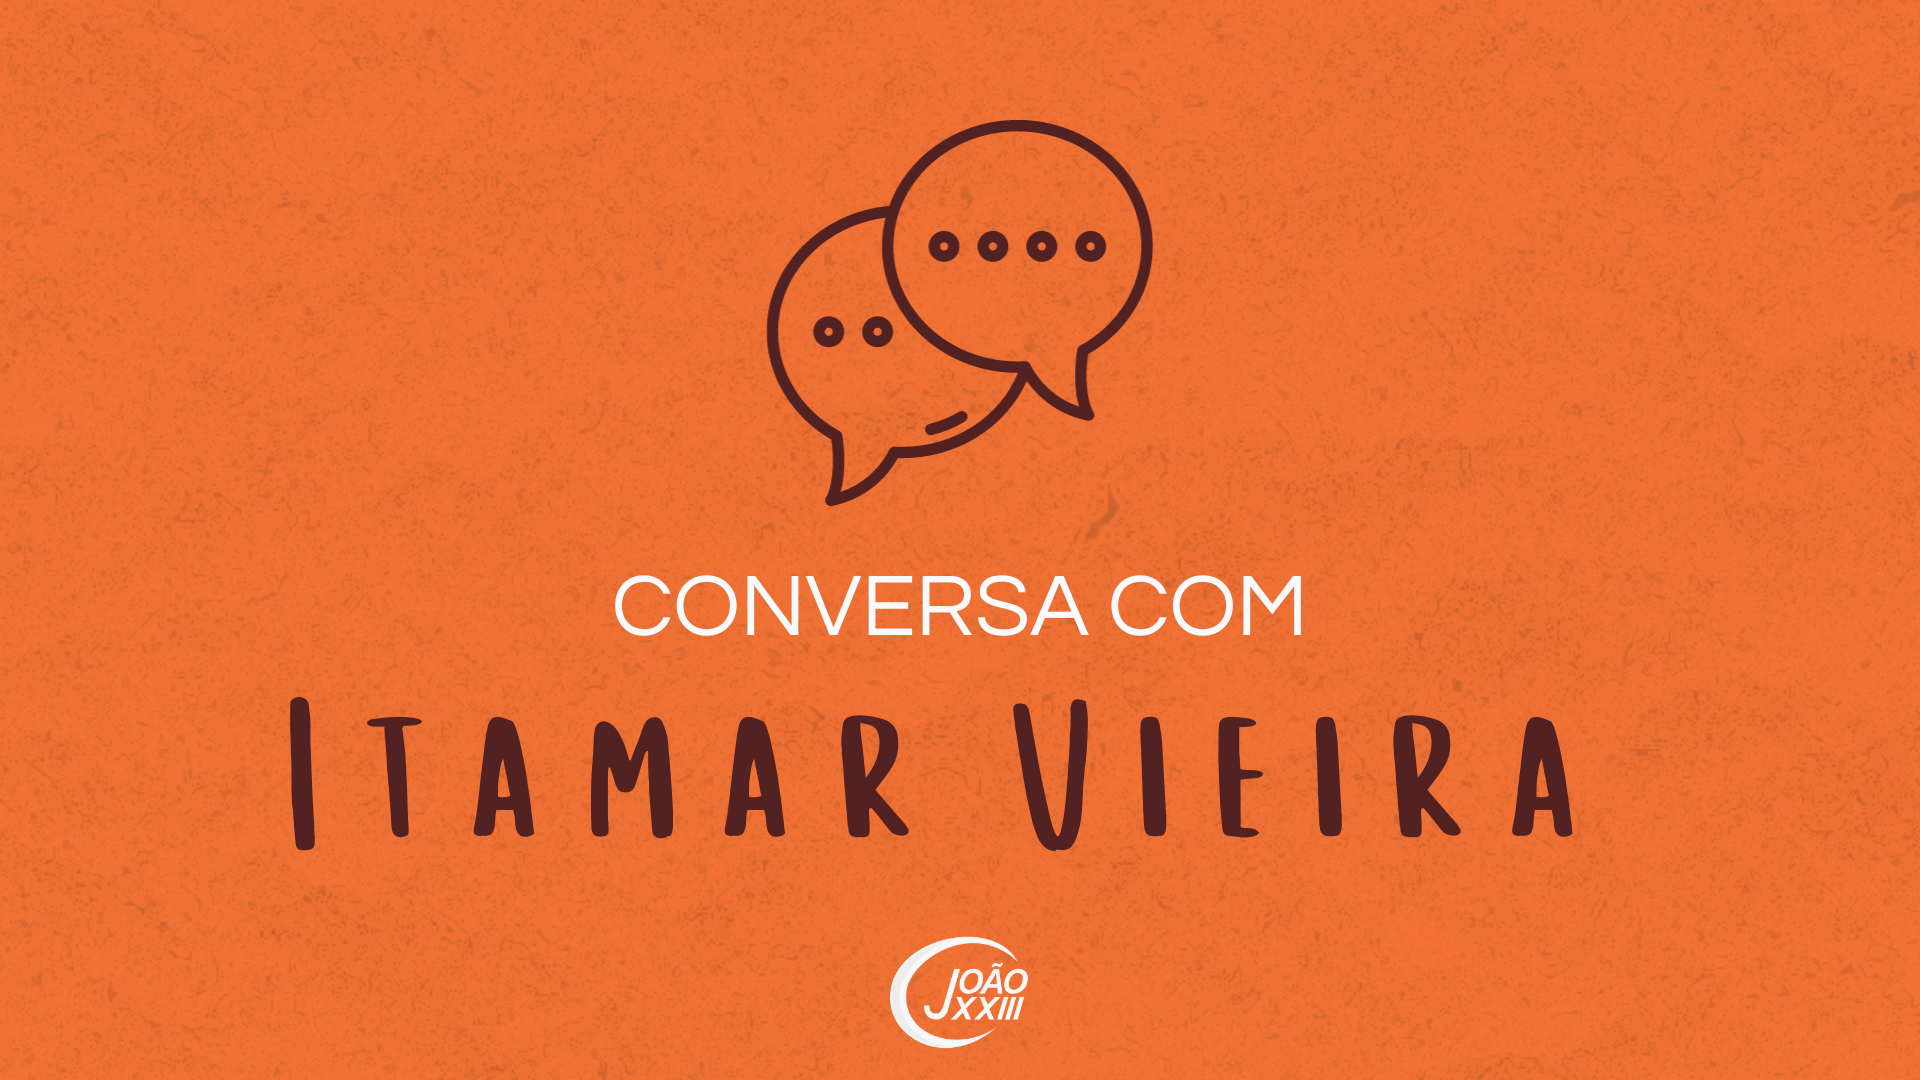 You are currently viewing Conversa com Itamar Vieira